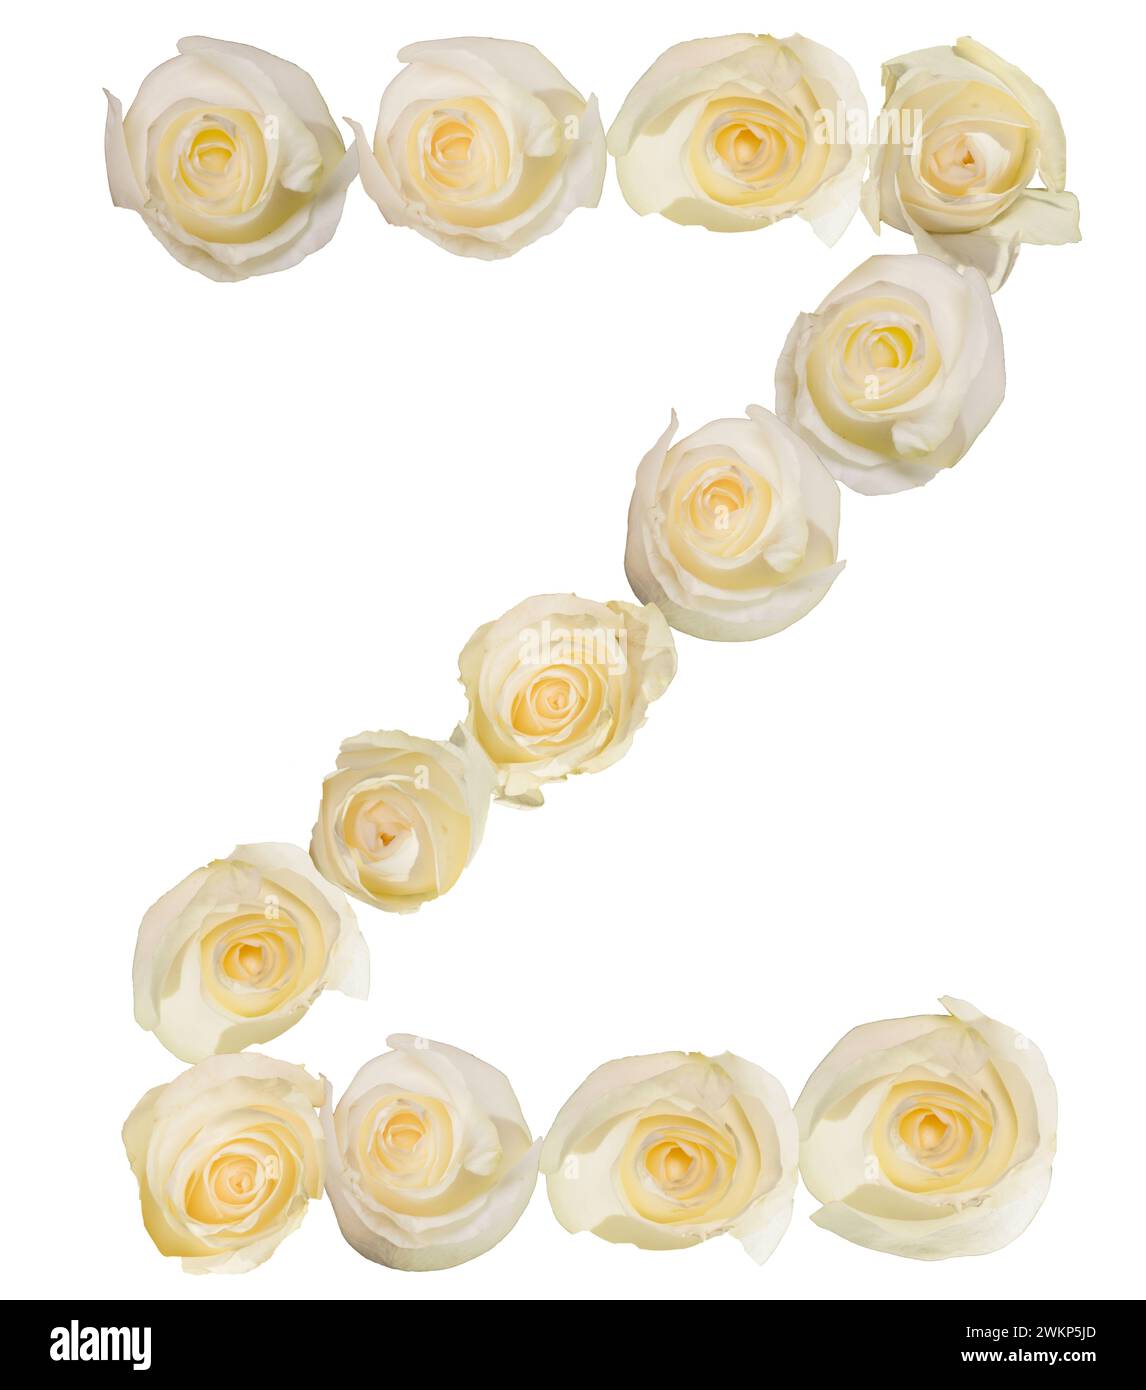 Weiße Rosen wurden verwendet, um den Buchstaben Z zu buchstabieren und einen interessanten und ästhetischen Buchstaben zu schaffen. Auf weißem Hintergrund wird Aufmerksamkeit erregt und reagiert. Stockfoto